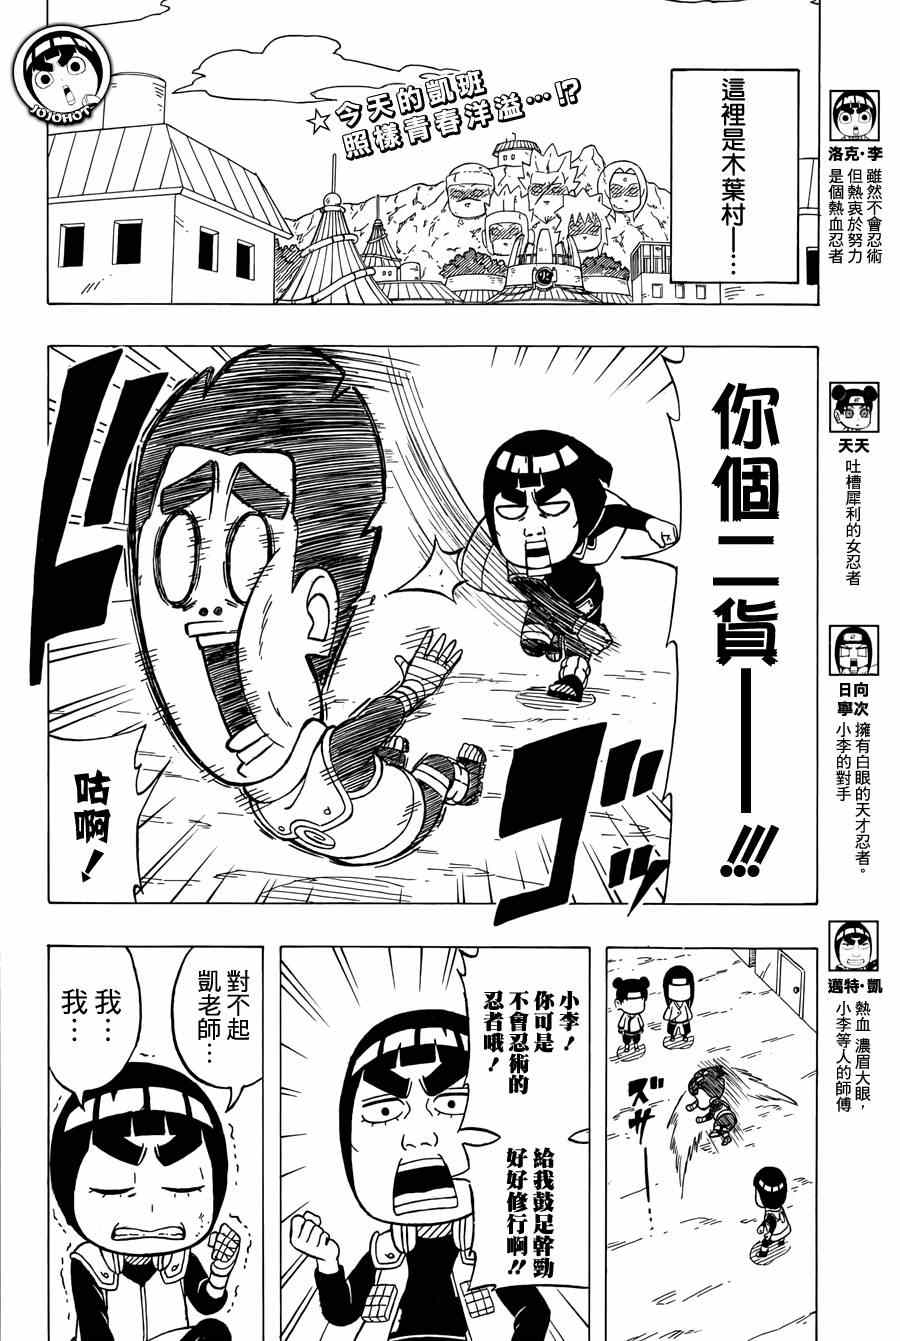 《洛克李之青春活力全开忍传》漫画 洛克李36集